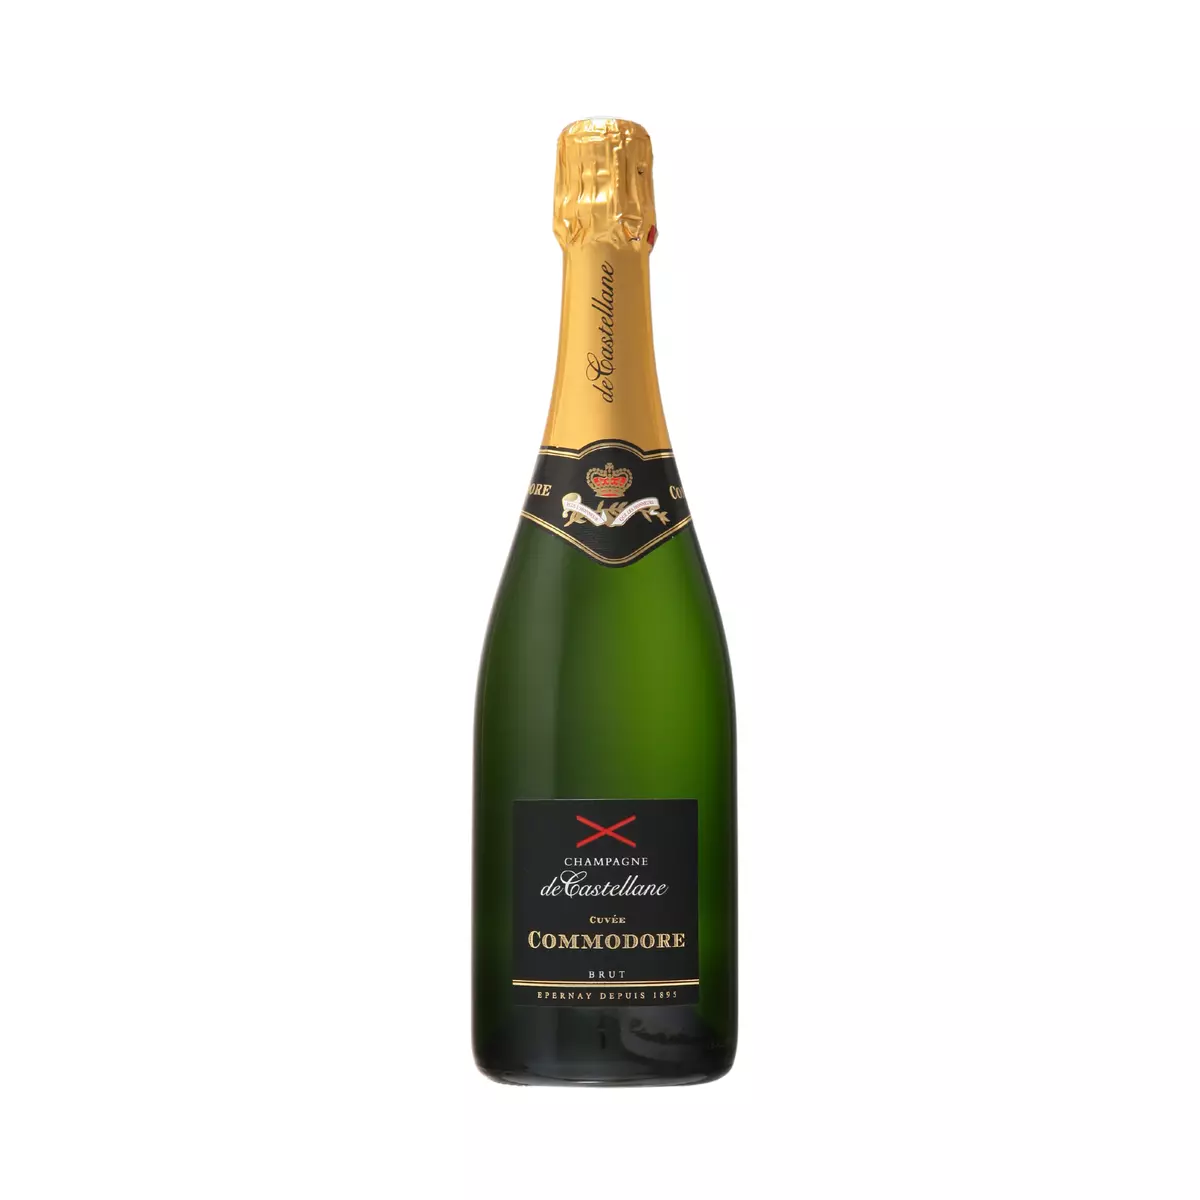 DE CASTELLANE AOP Champagne brut cuvée Commodore 75cl